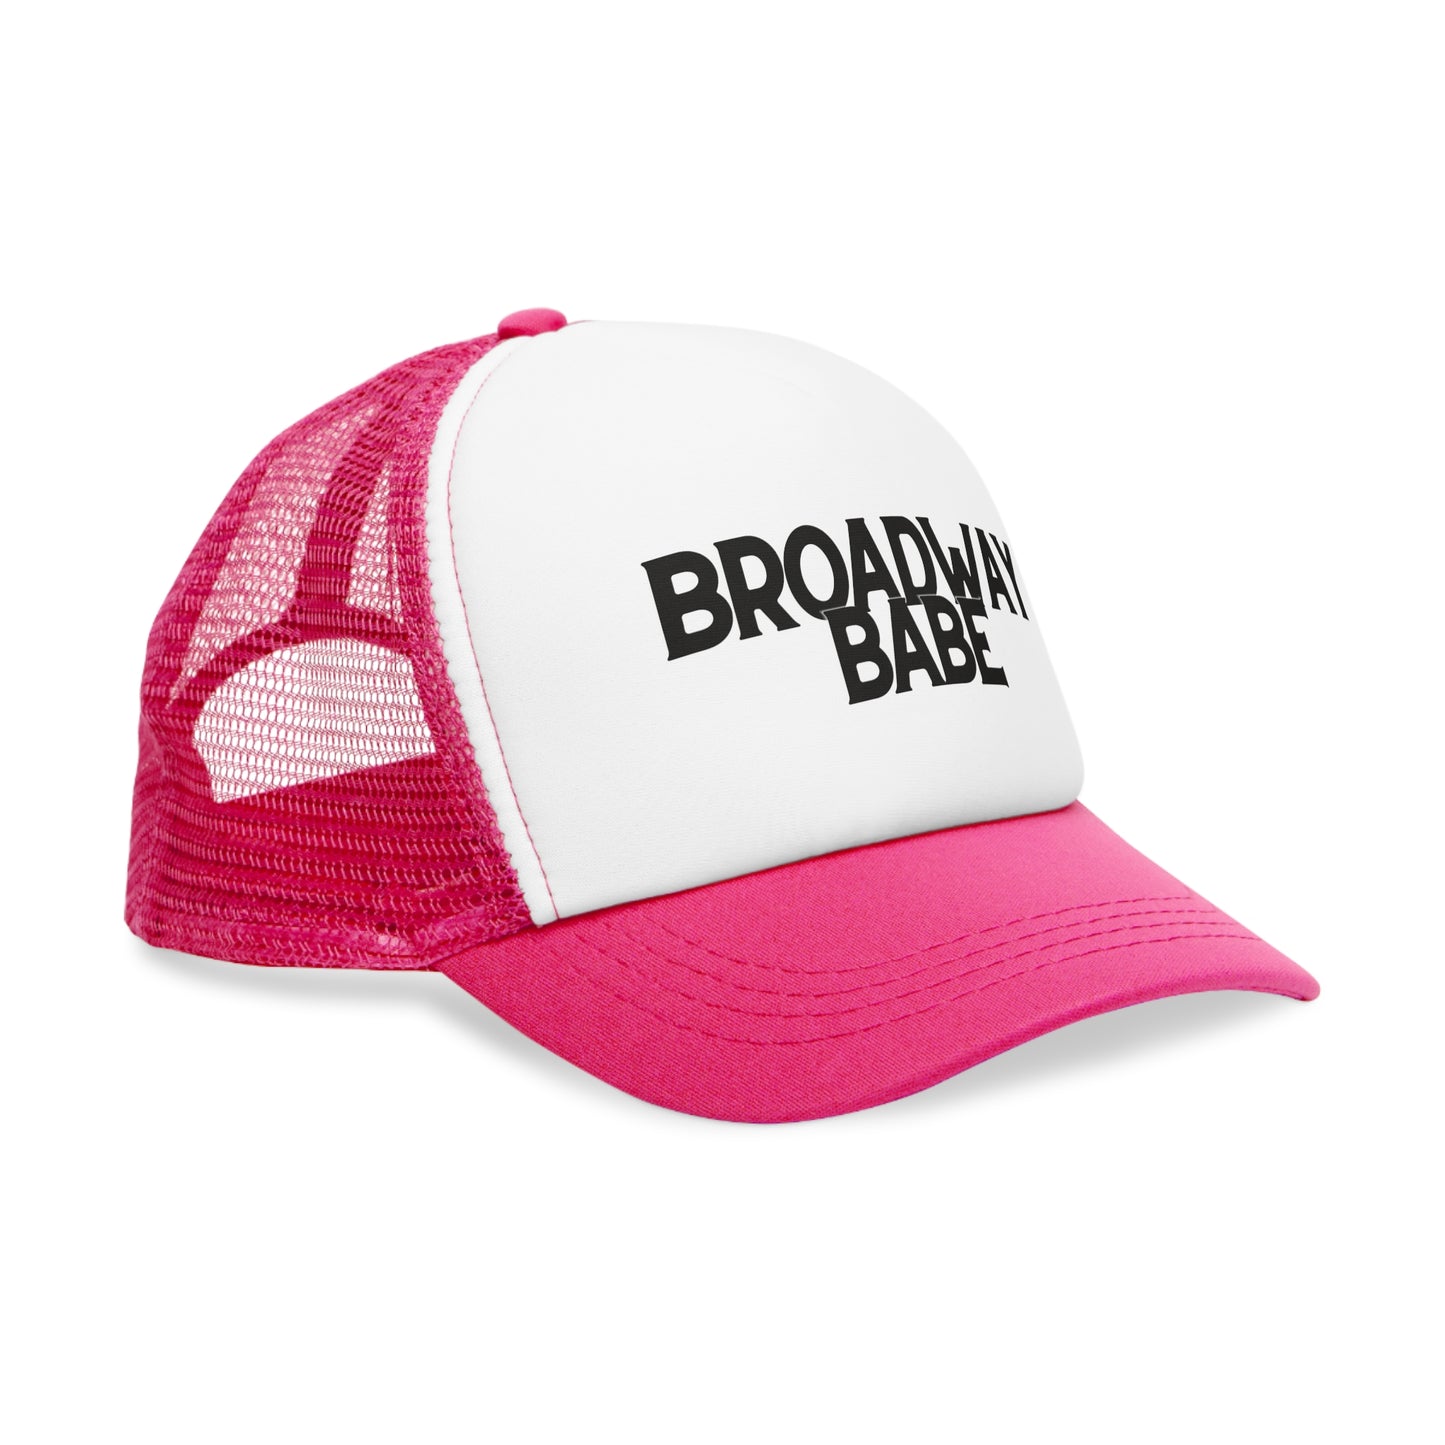 Broadway Babe Trucker Hat